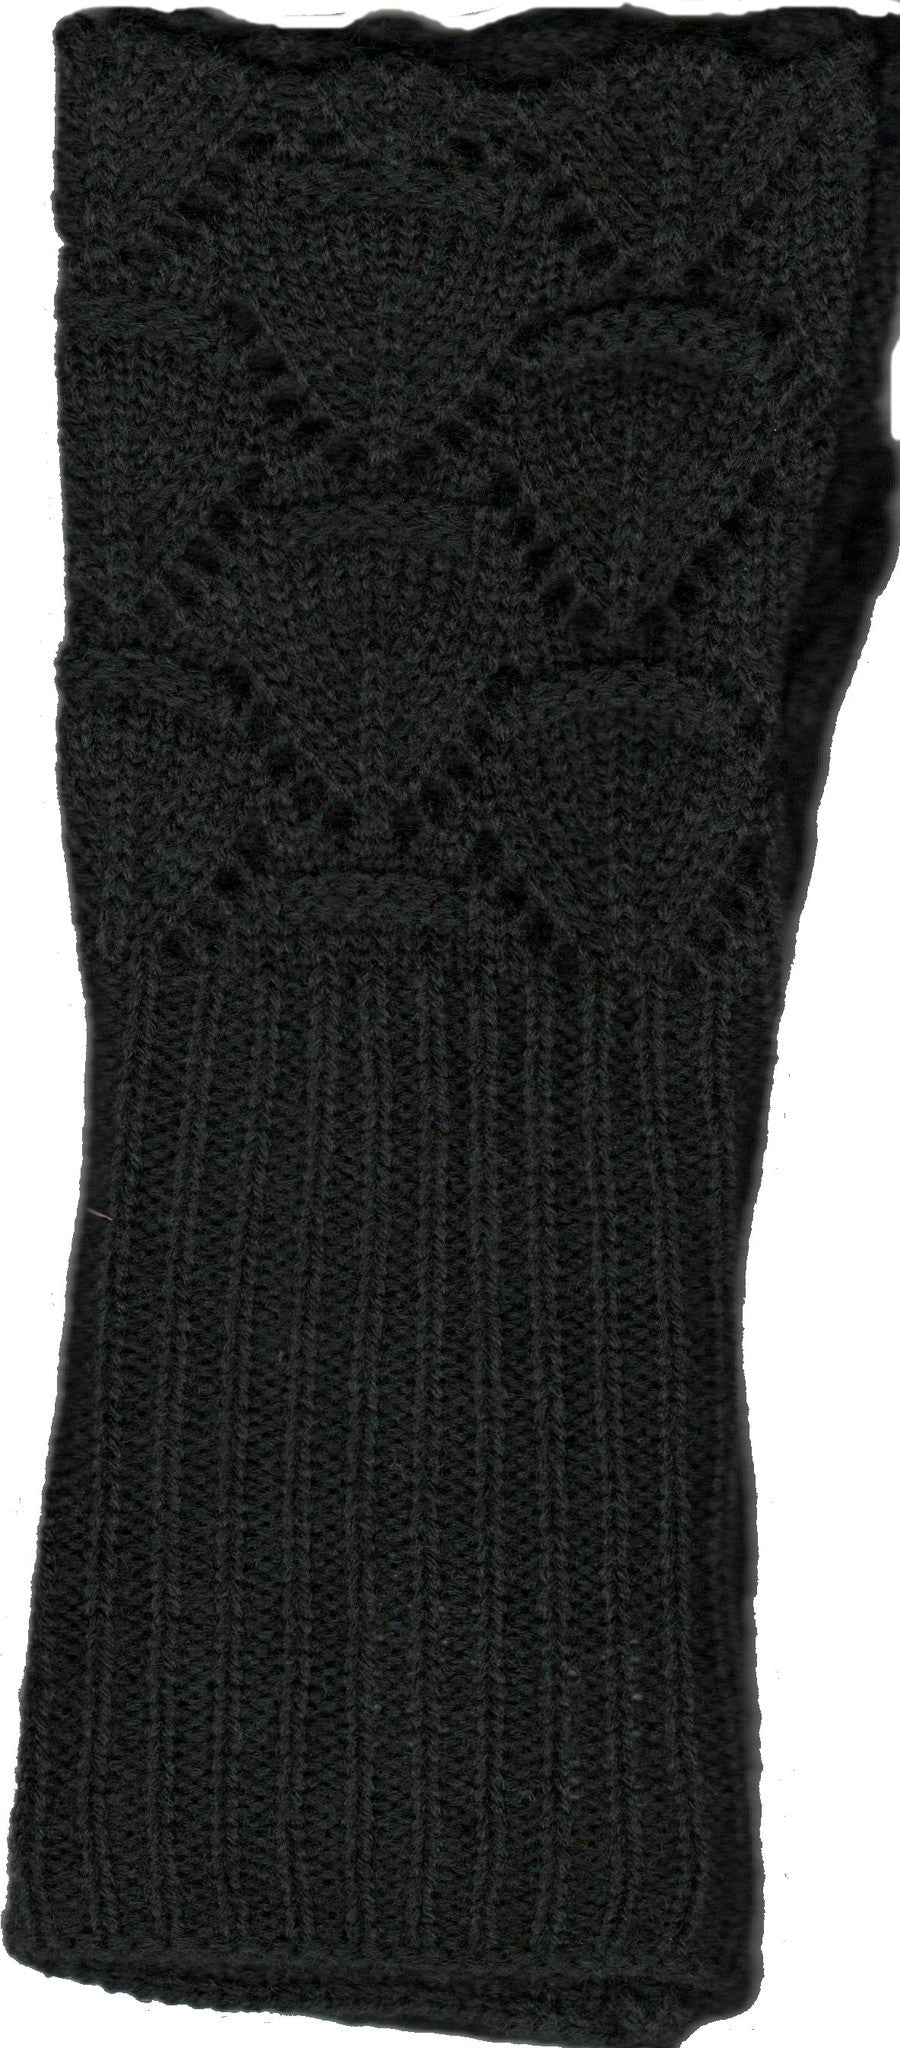 Lauer Glove Lace and Scallop Edge Design in Black